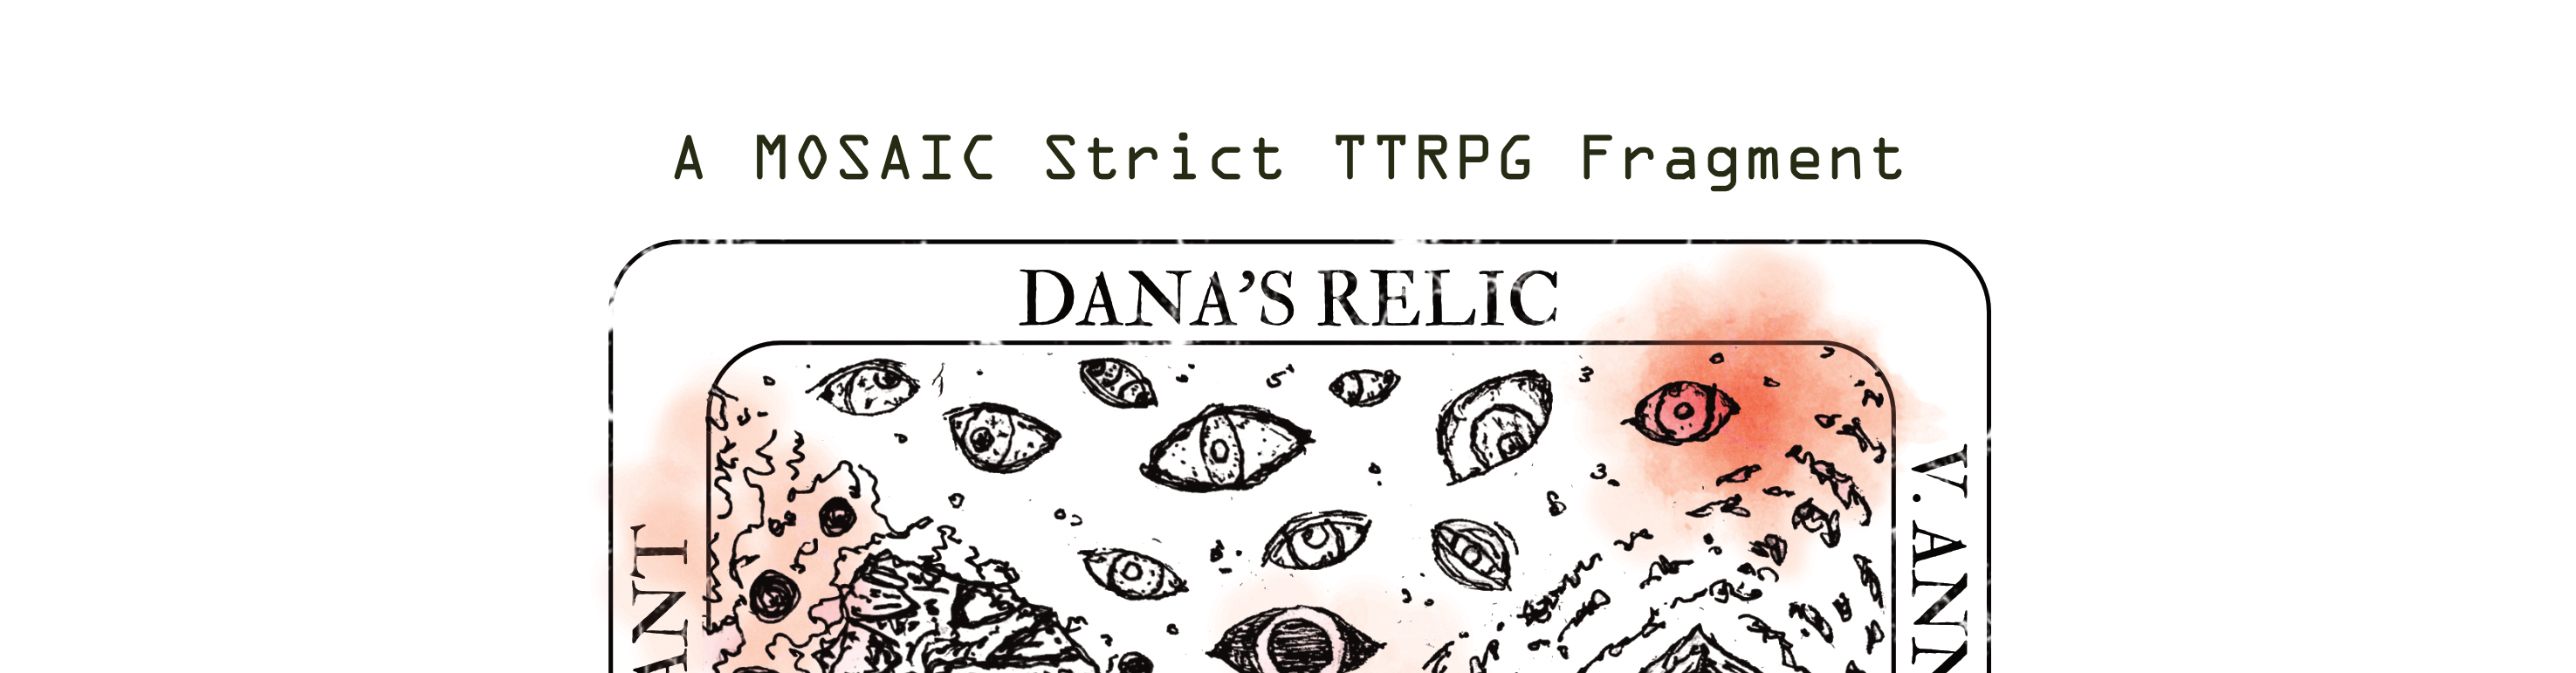 Dana's Relic